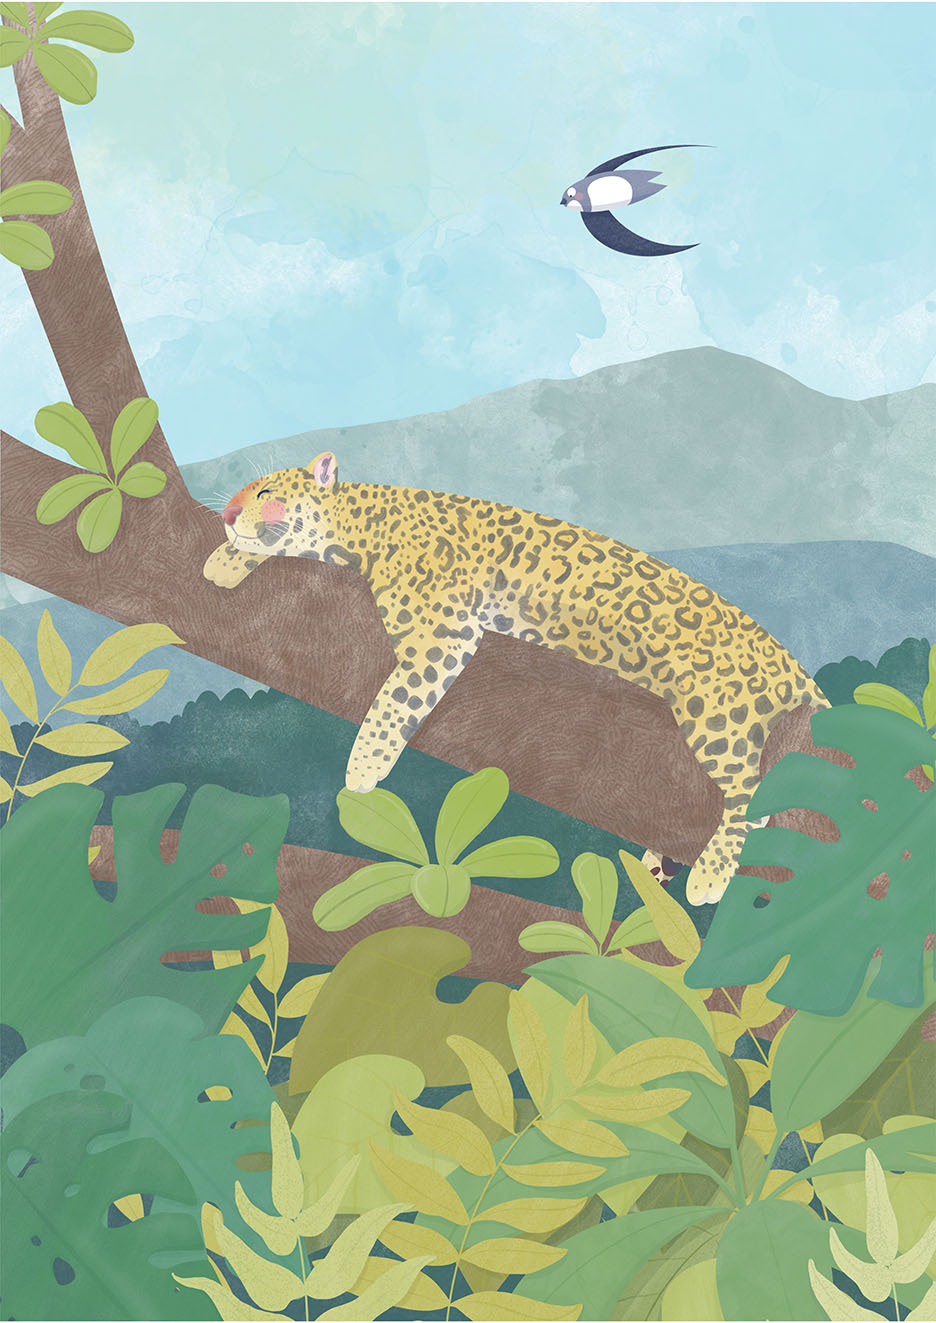 Alpensegler Albi fliegt an einem Leoparden, der entspannt auf einem Ast liegt vorbei